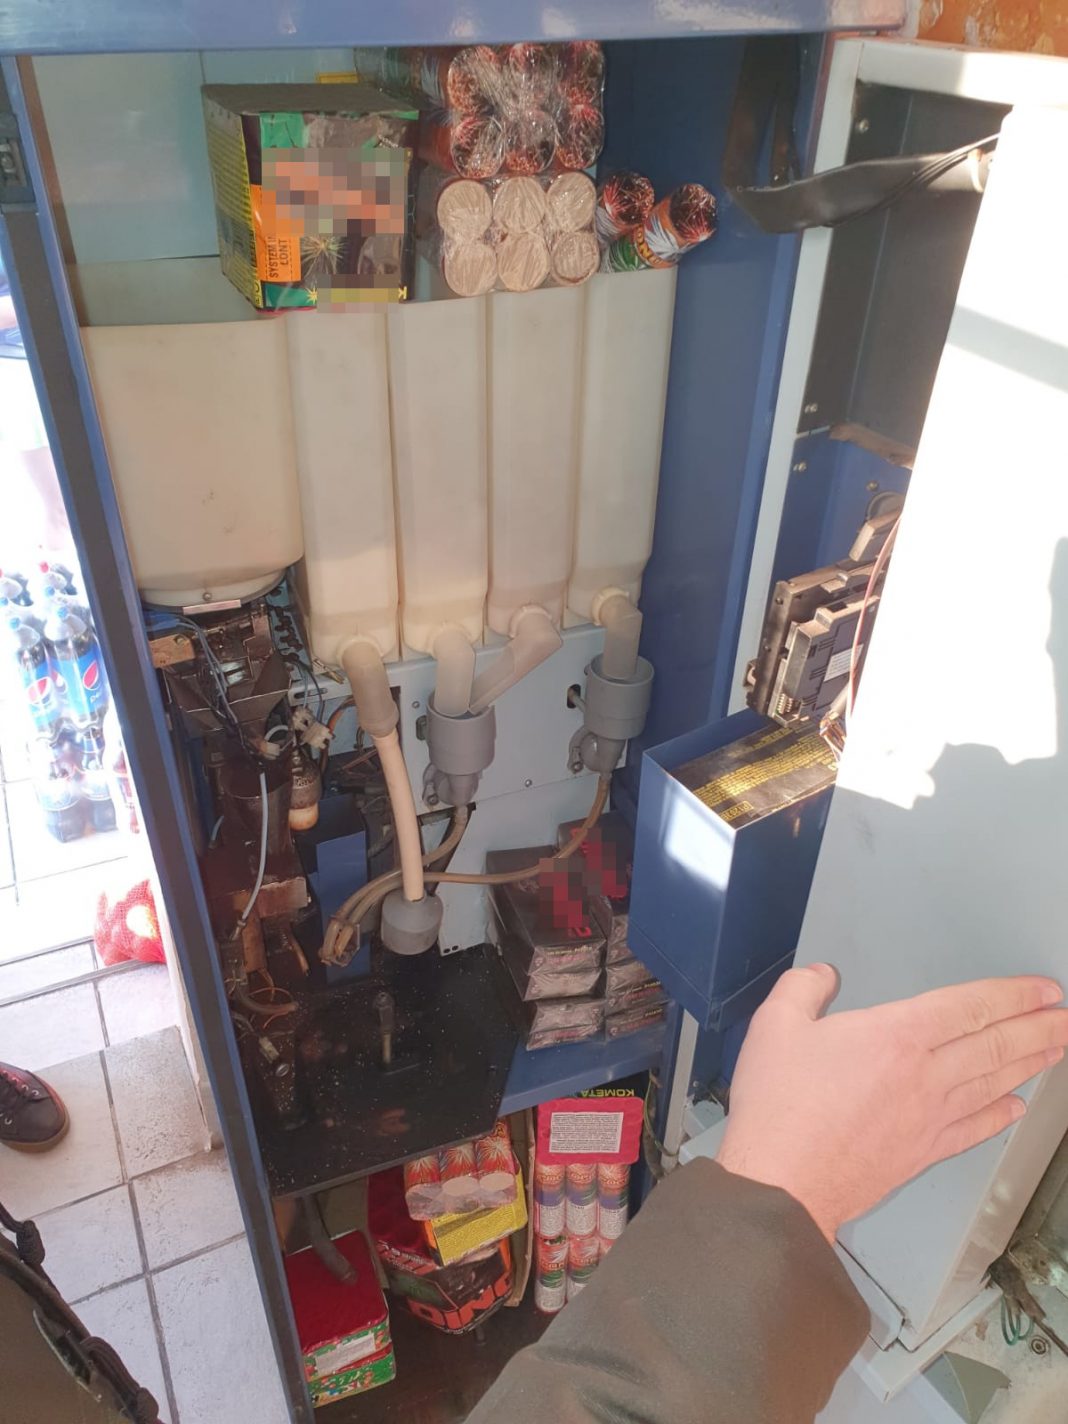 Articole pirotehnice ascunse în aparatul de cafea, la Călimănești